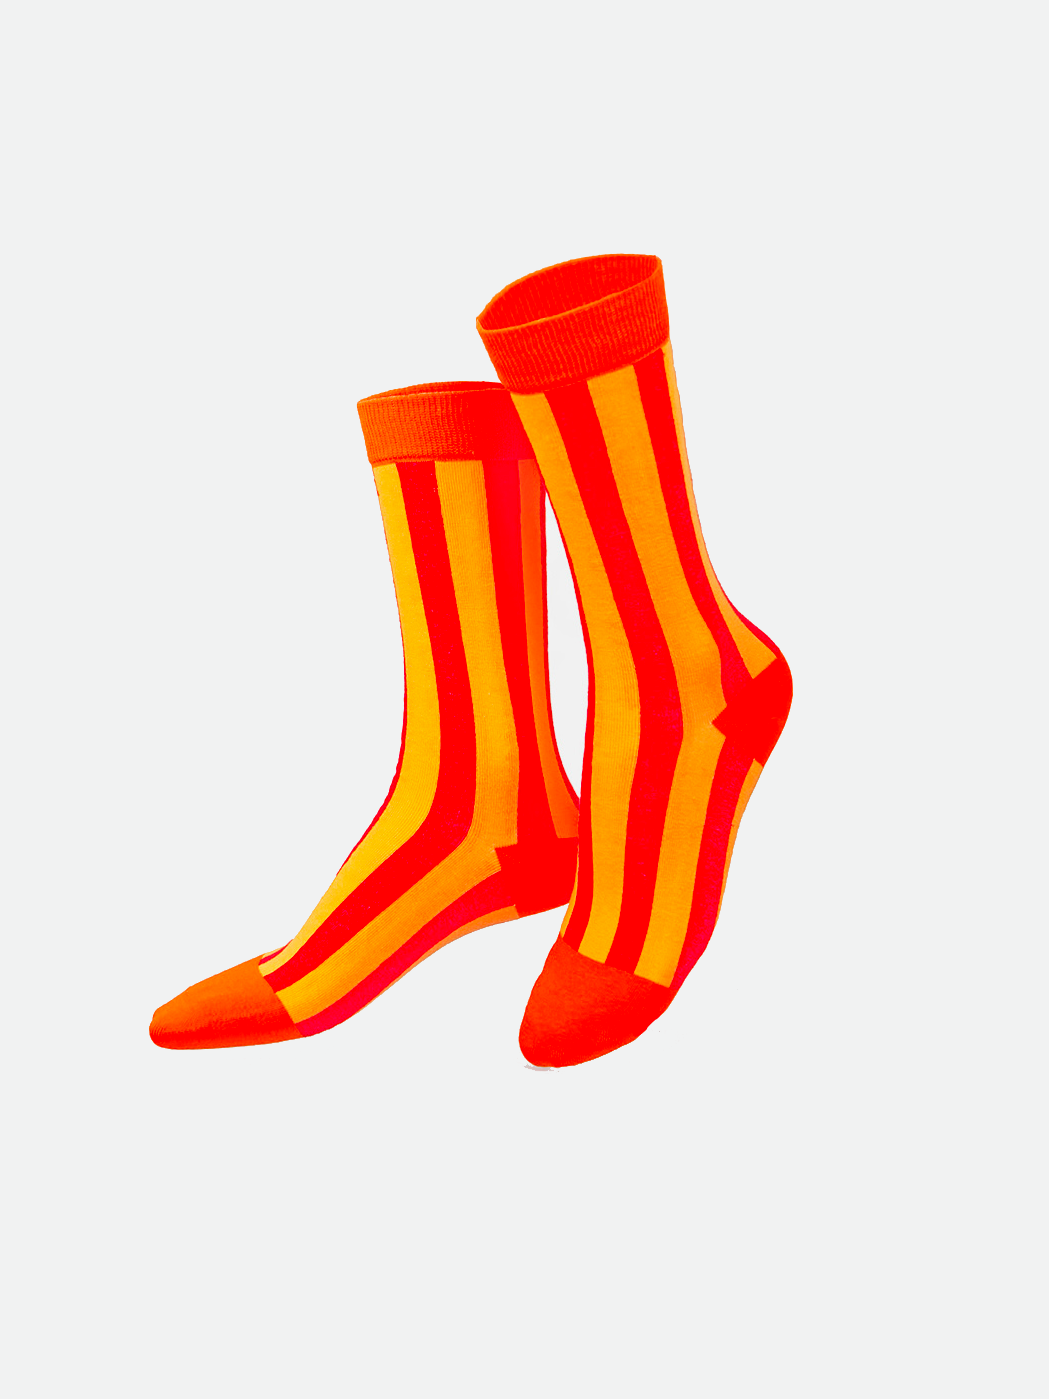 Juicy Orange Socks